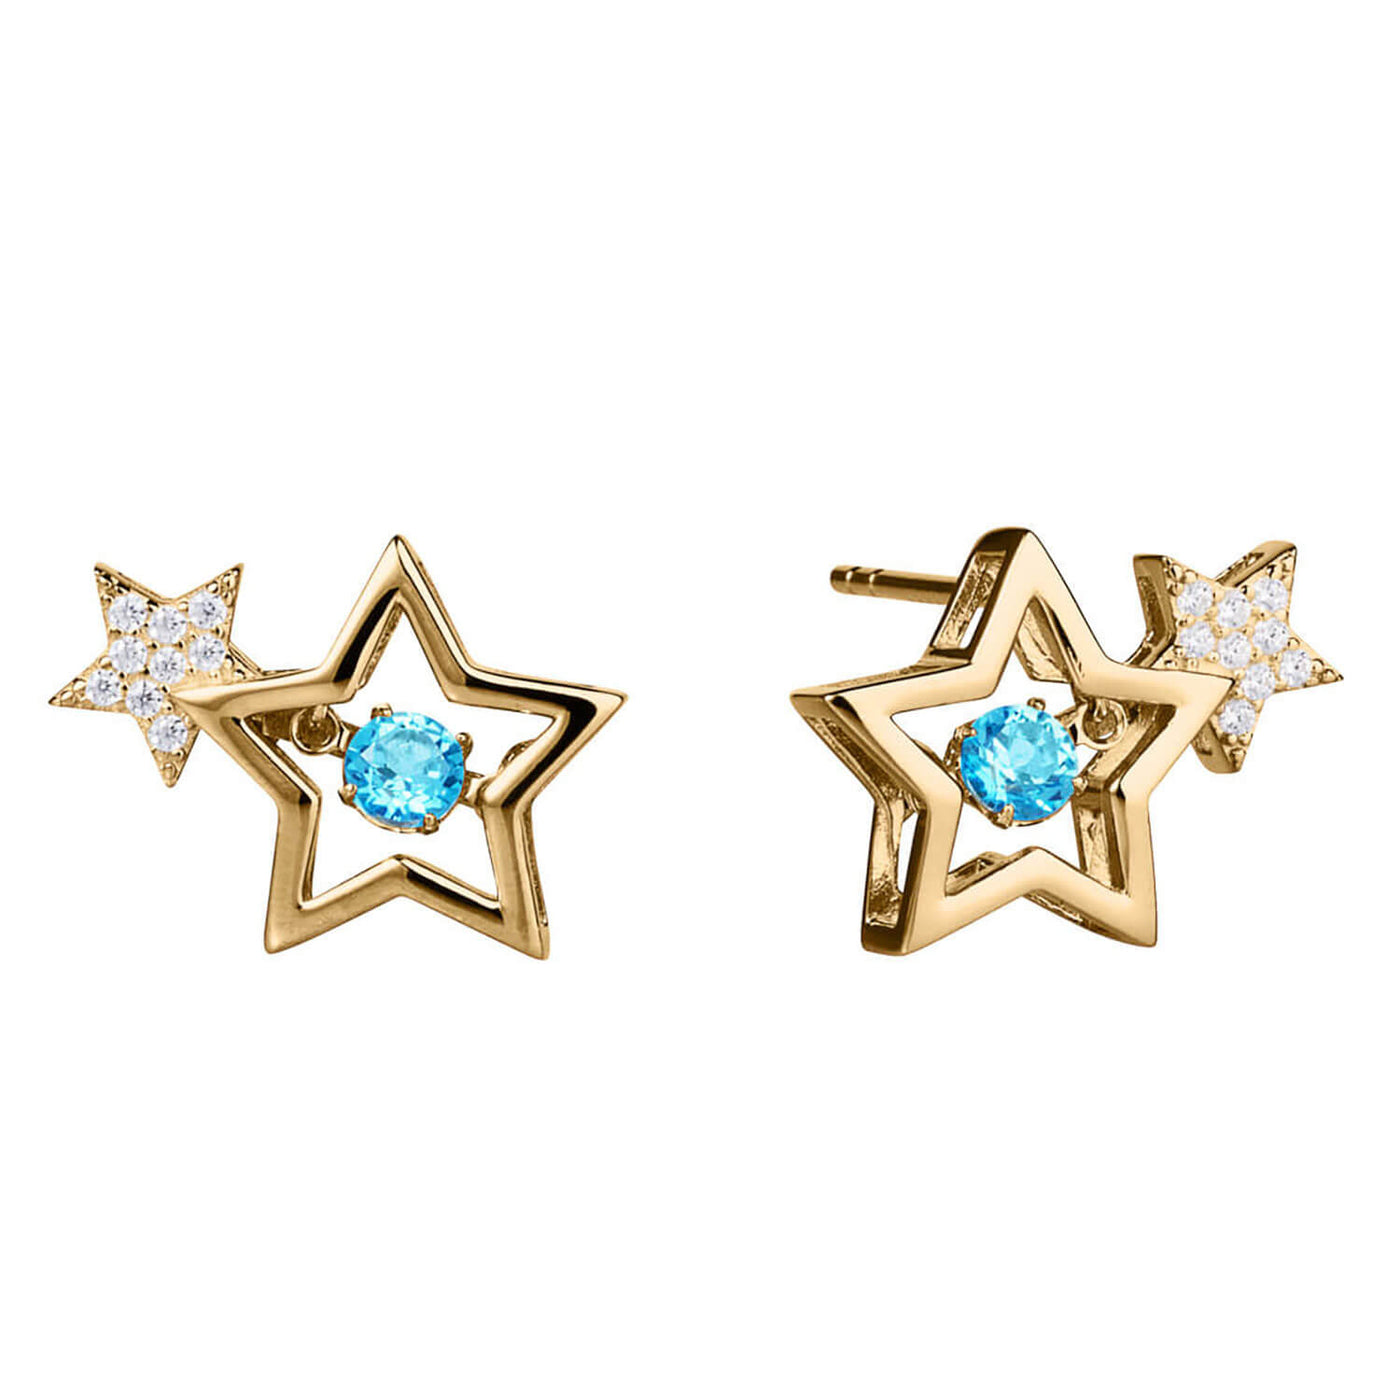 Daniel Steiger Starlight Topaz Gold Earrings